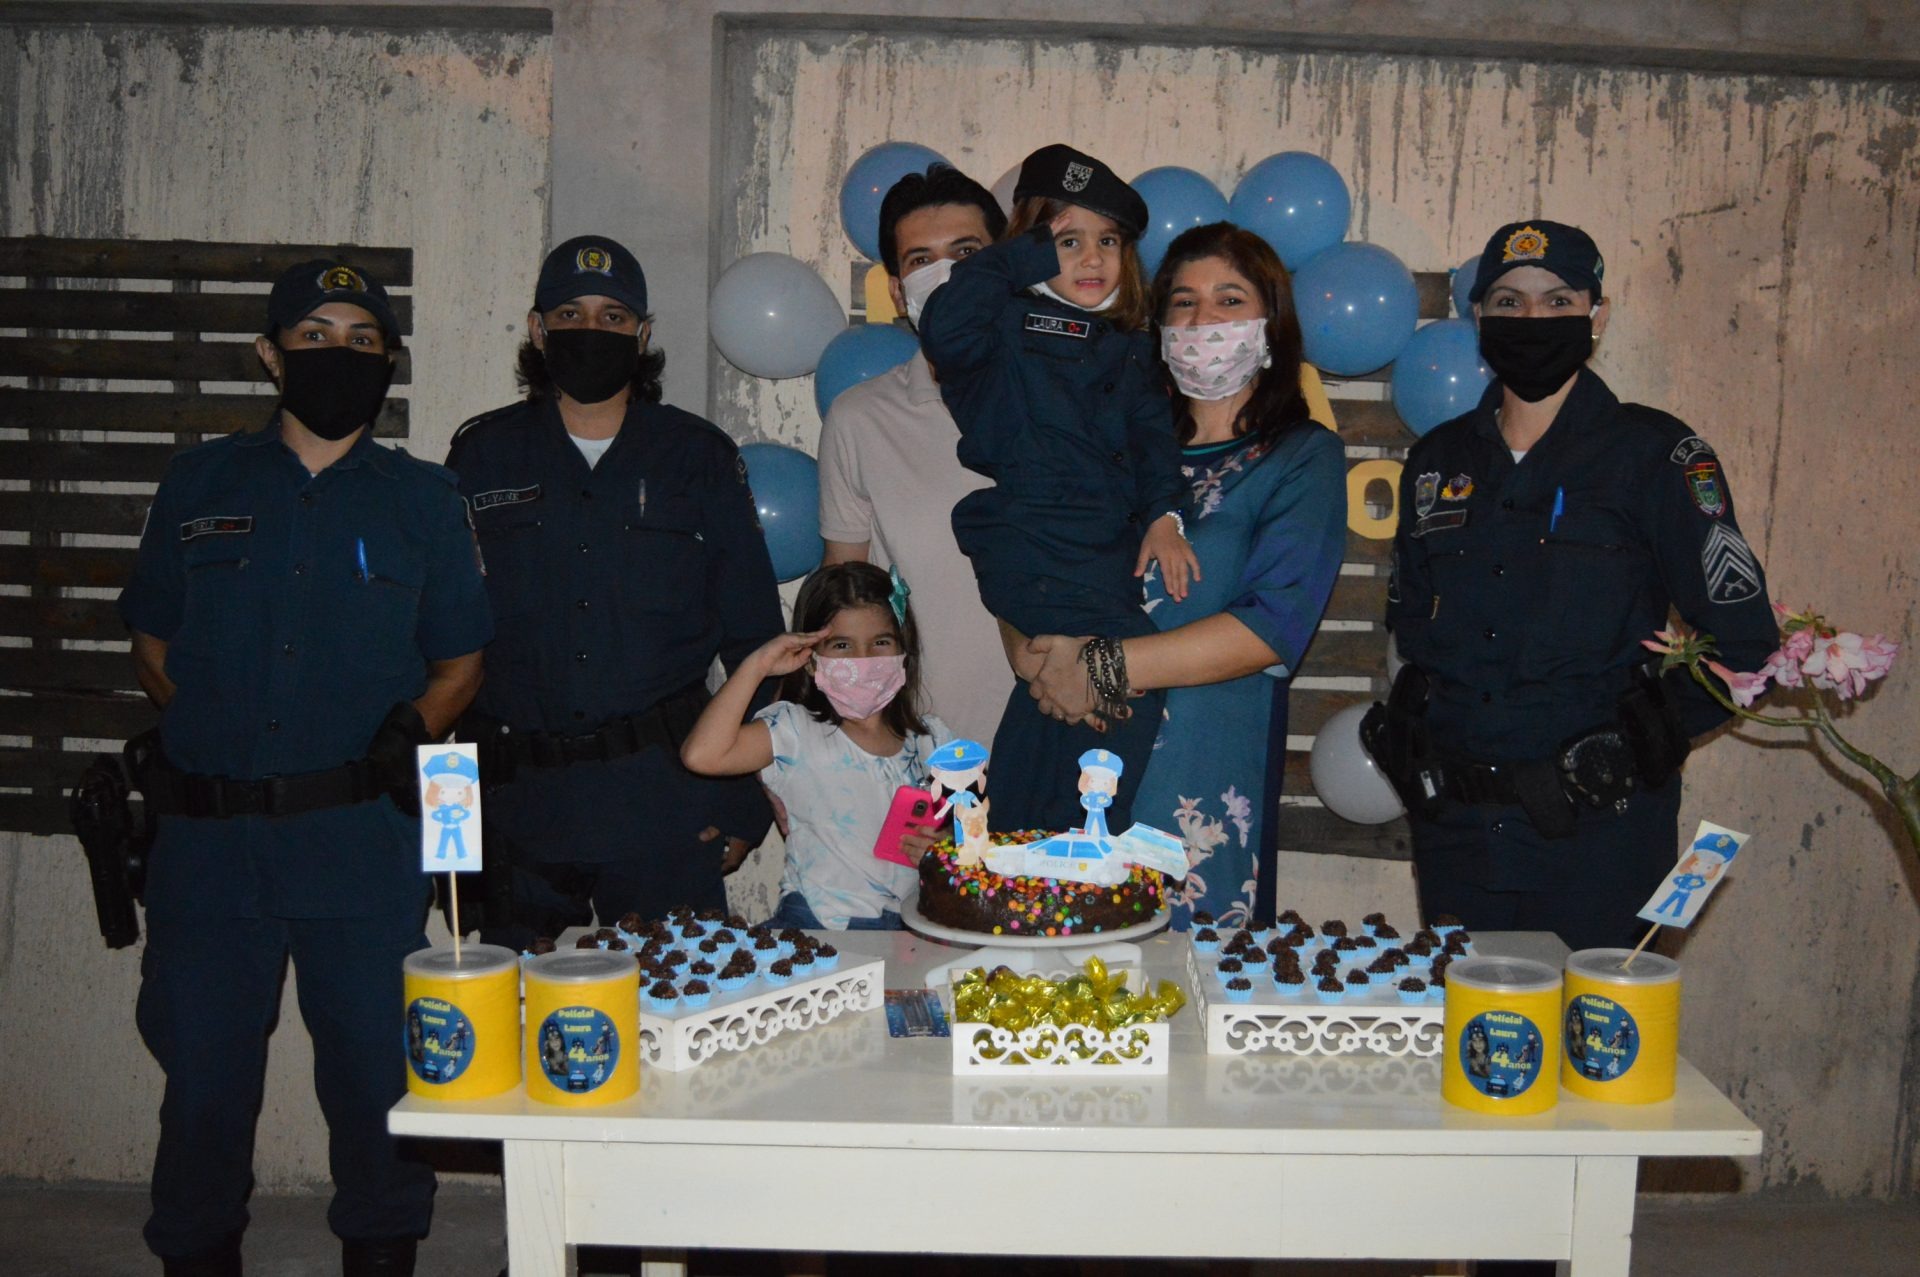 PM aparece de surpresa em aniversário de criança de 4 anos que sonha ser policial